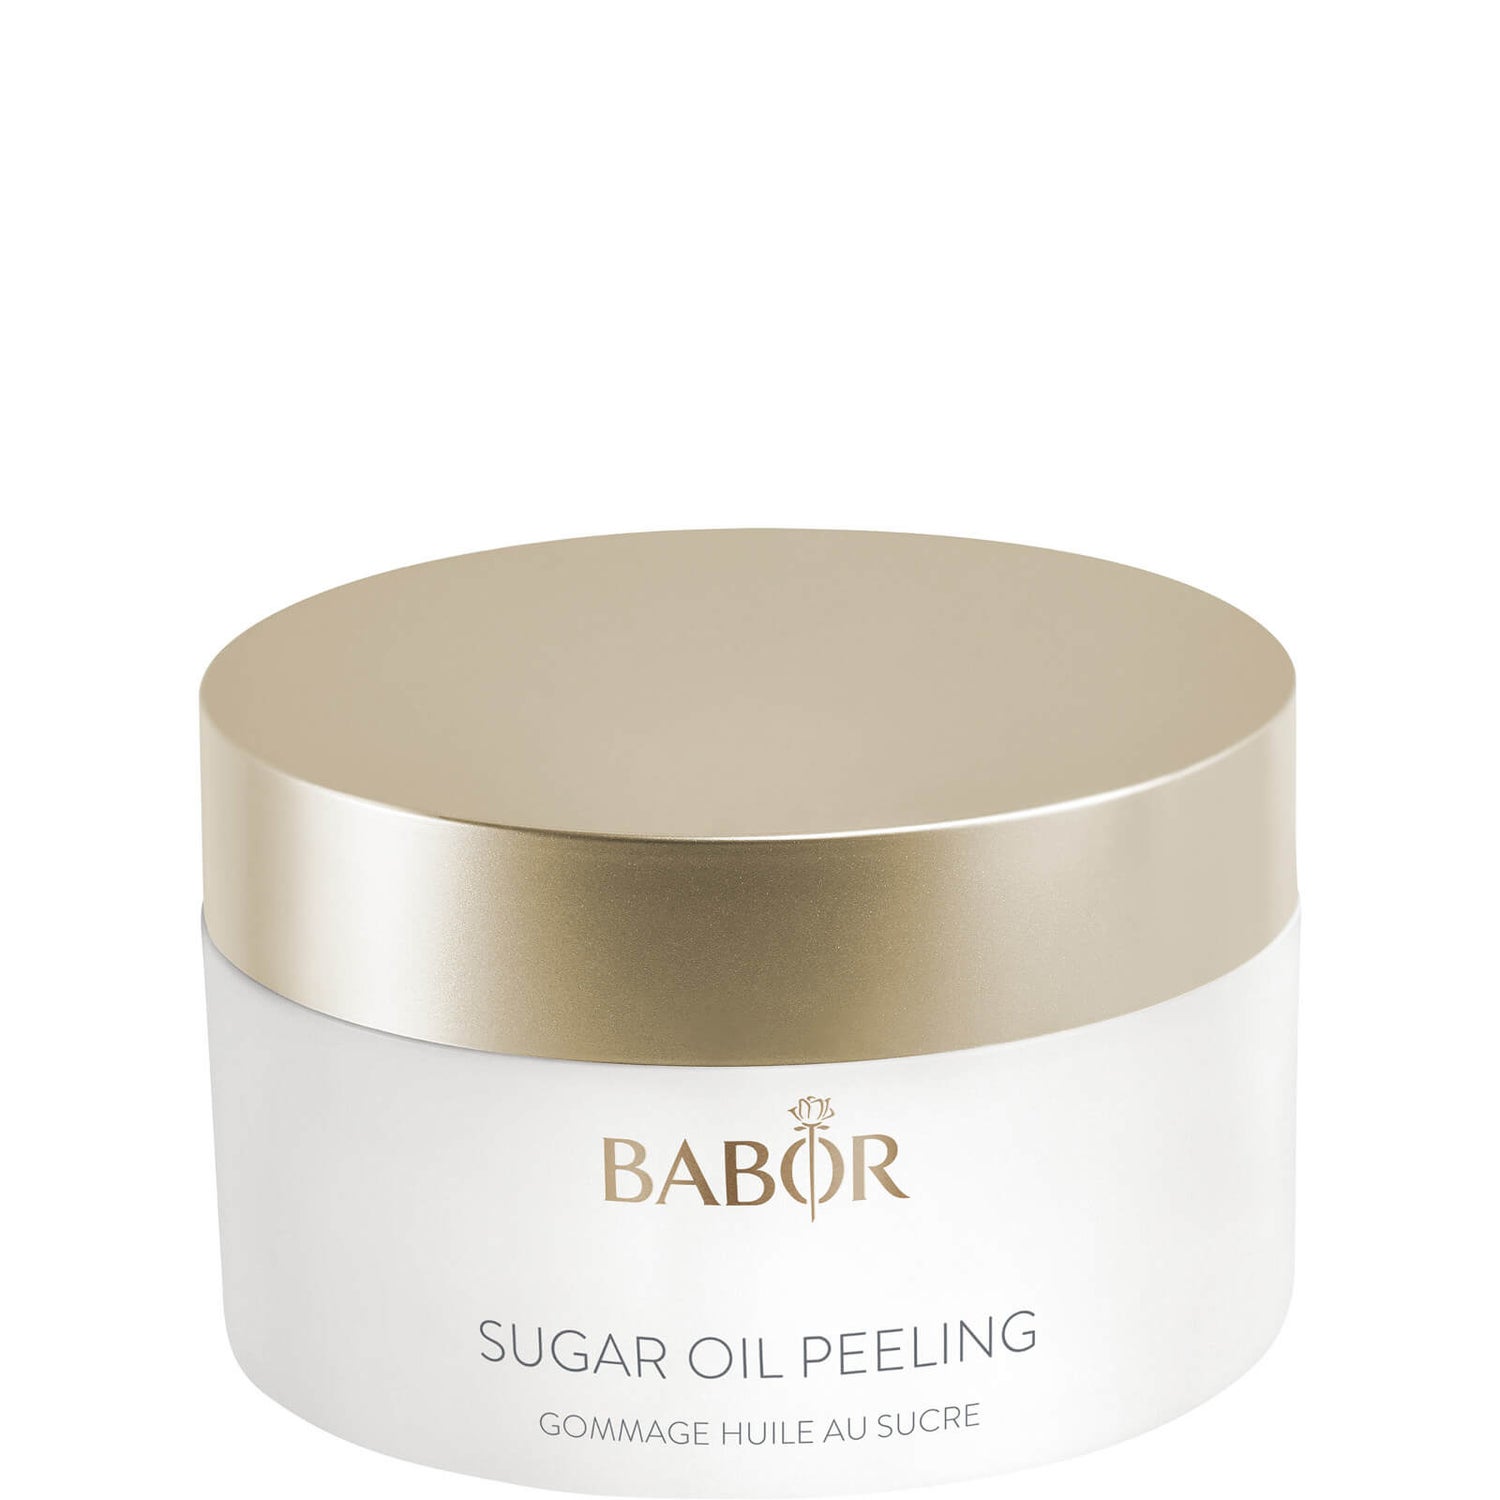 BABOR Cleansing Sugar Oil Peeling 50ml